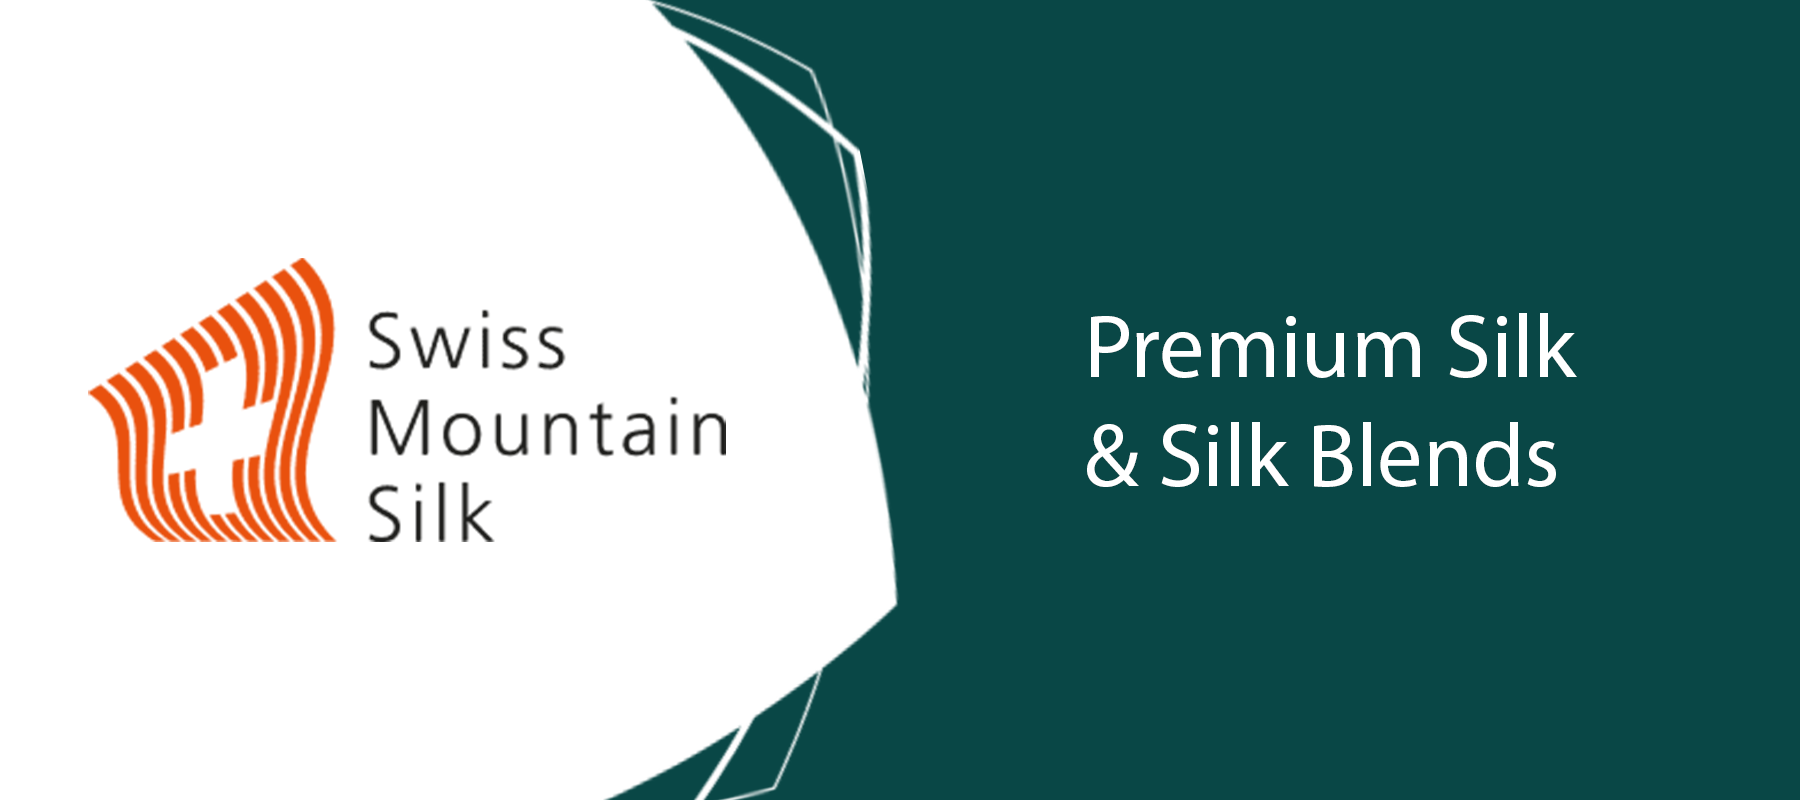 Swiss Mountain Silk - Premium Silk and Silk Blends